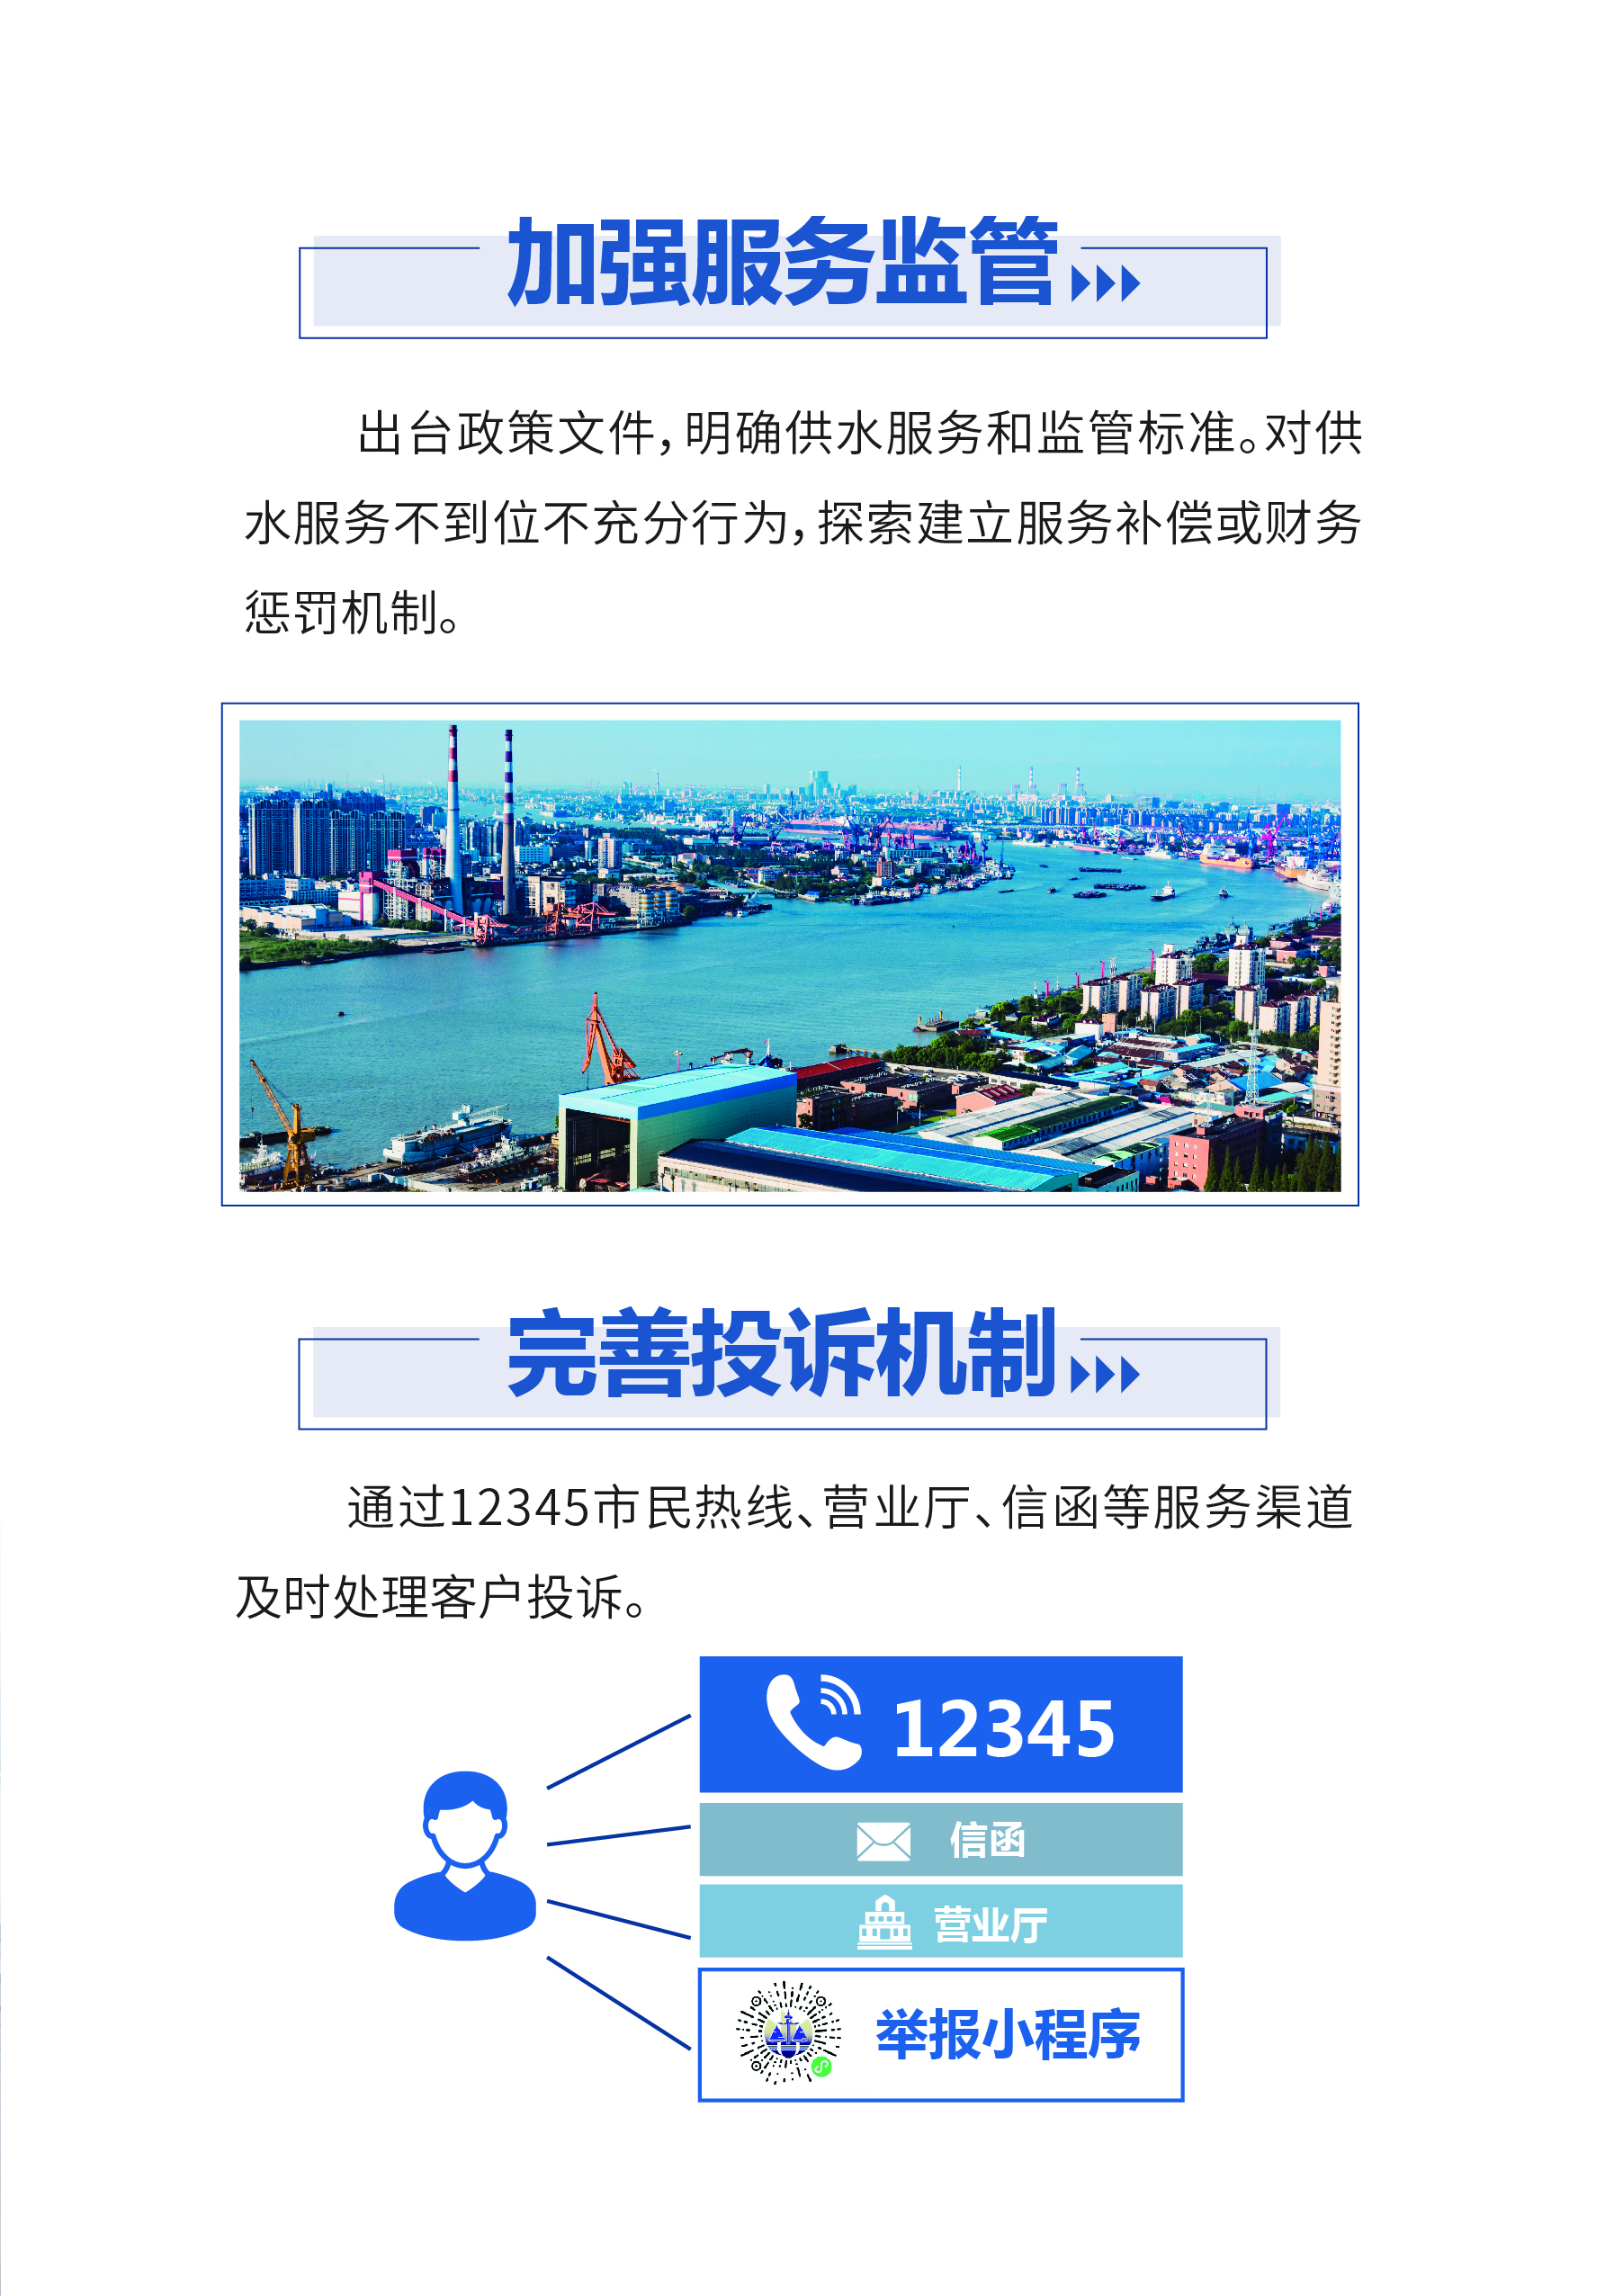 0515-上海供排水接入改革6.0版_页面_04.jpg